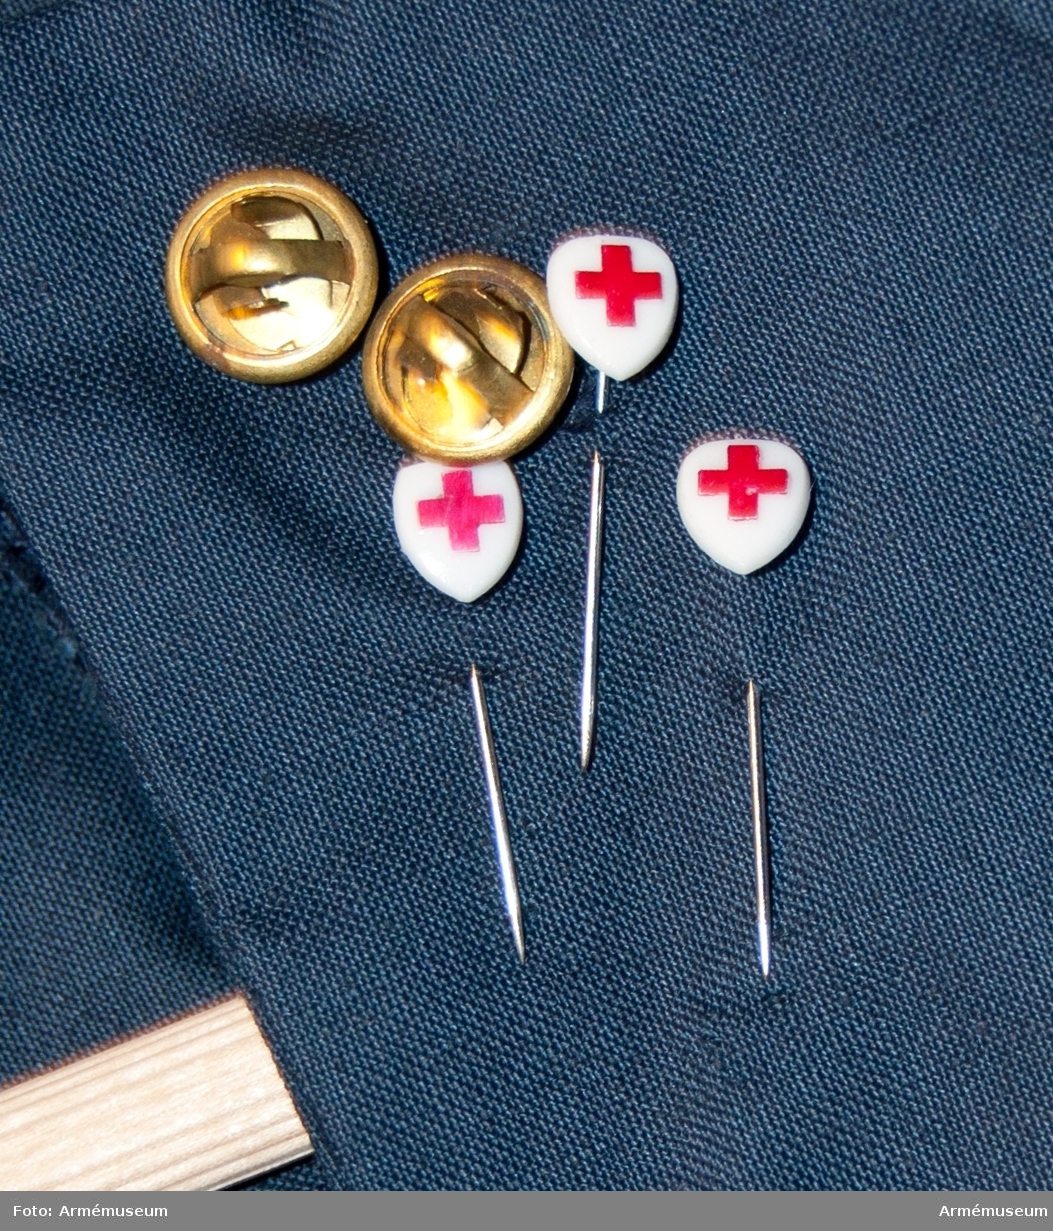 Rockklänning av blått tyg med Svenska Röda korsets tygmärke på överärmen.
Etikett i nacken med text: "Erling Richard 44".
Med samhörande skärp och tre nålar med röda korsetsymbol.